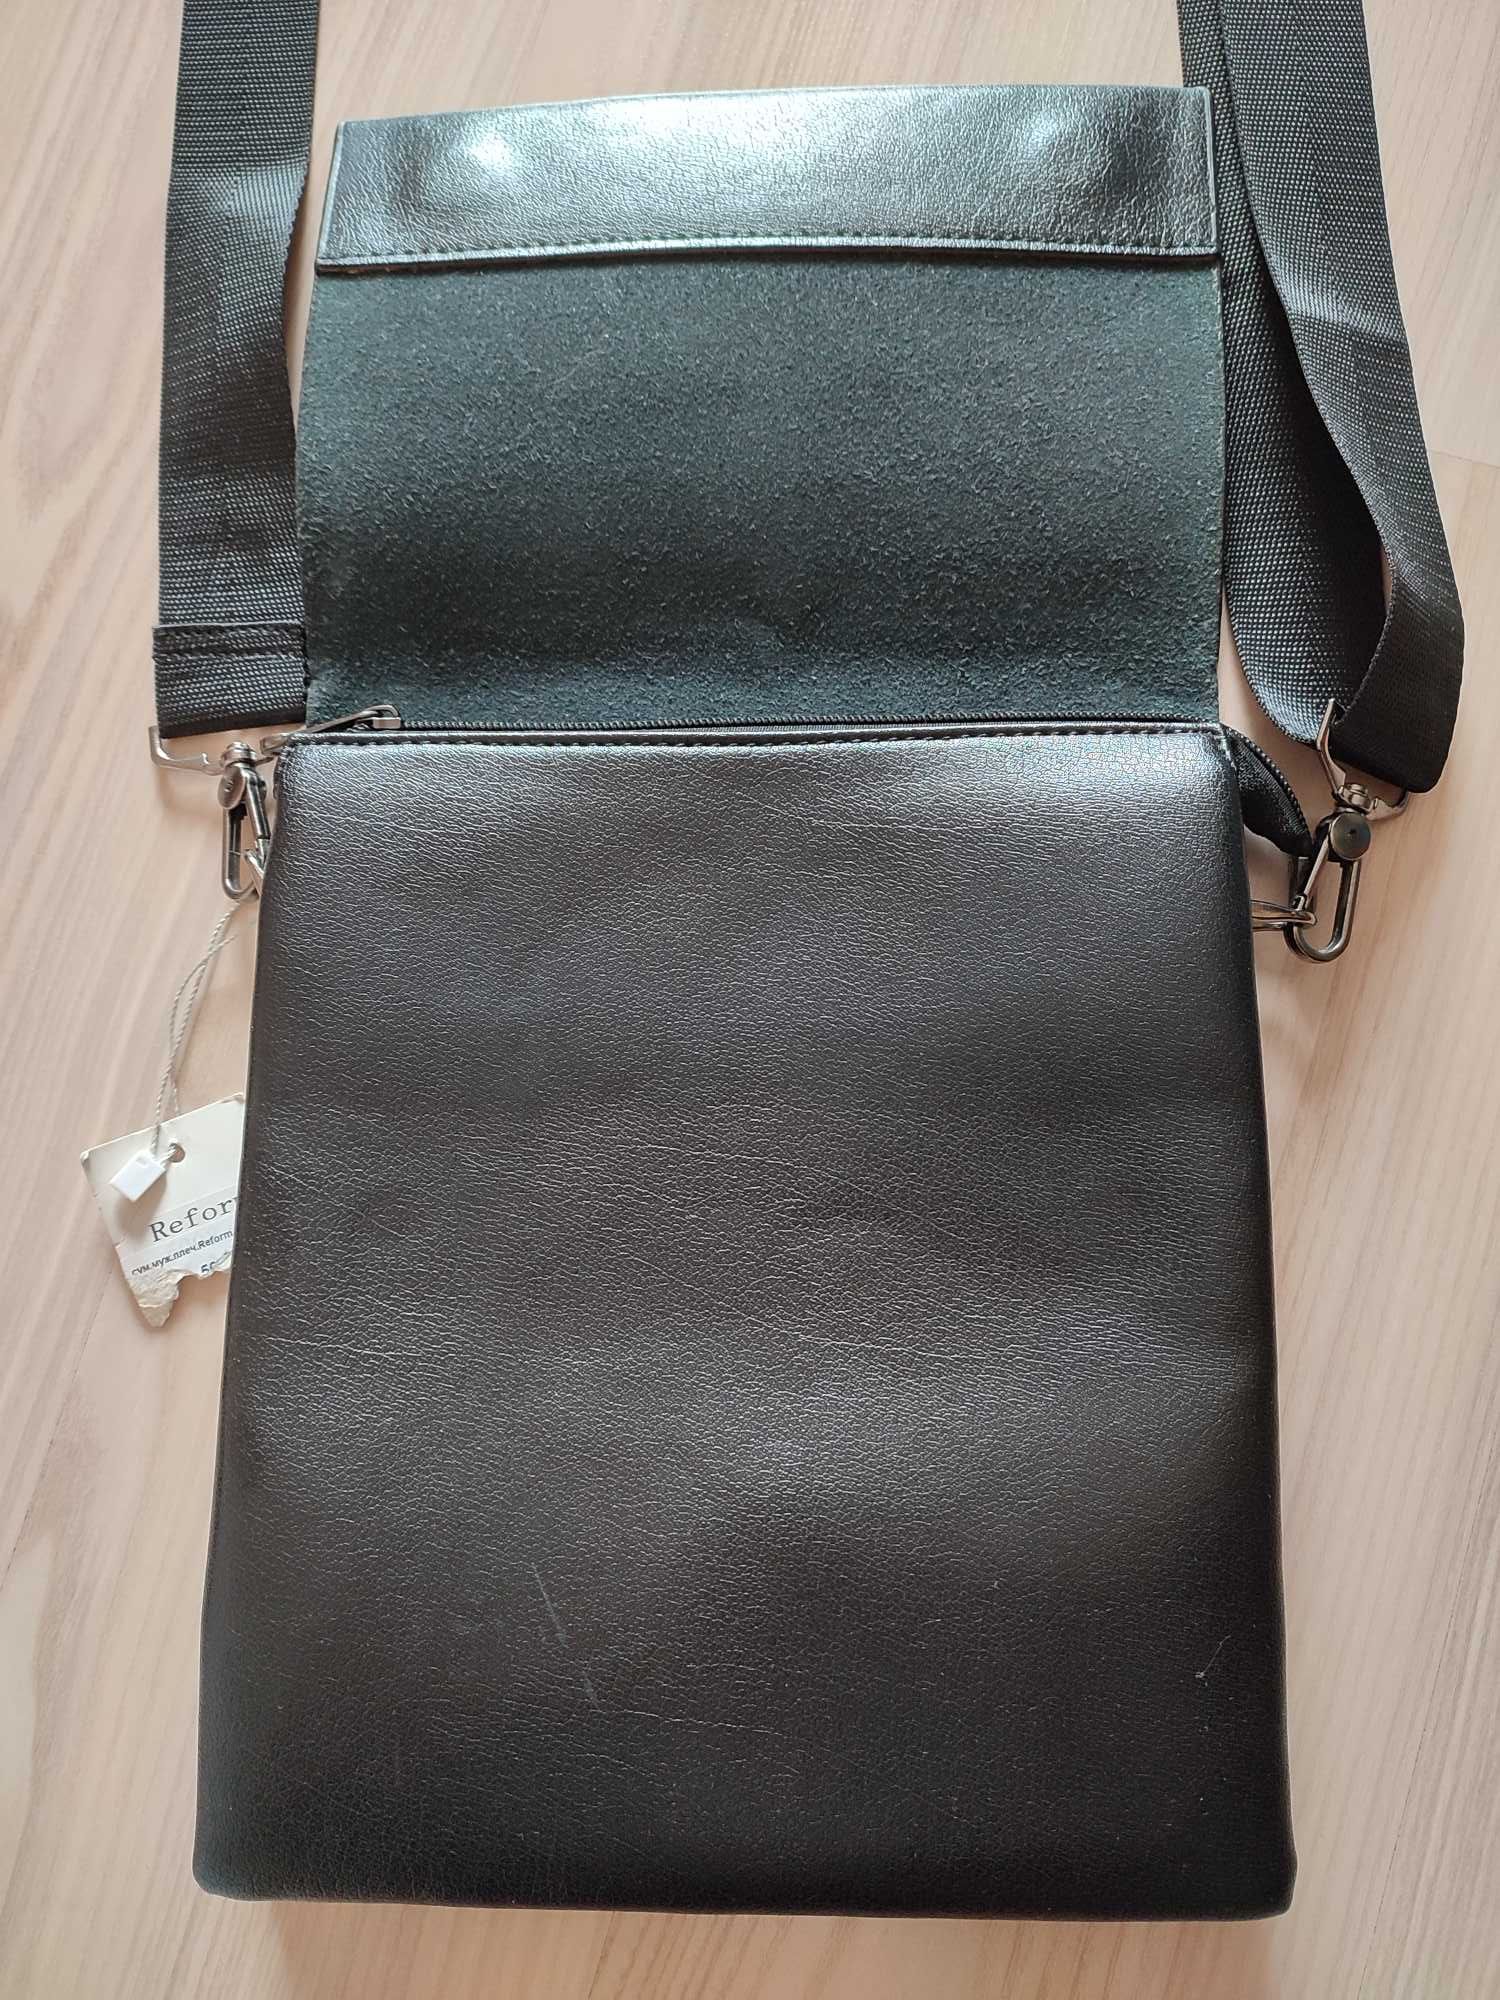 Мужская сумка/планшетка через плечо (кожзам)